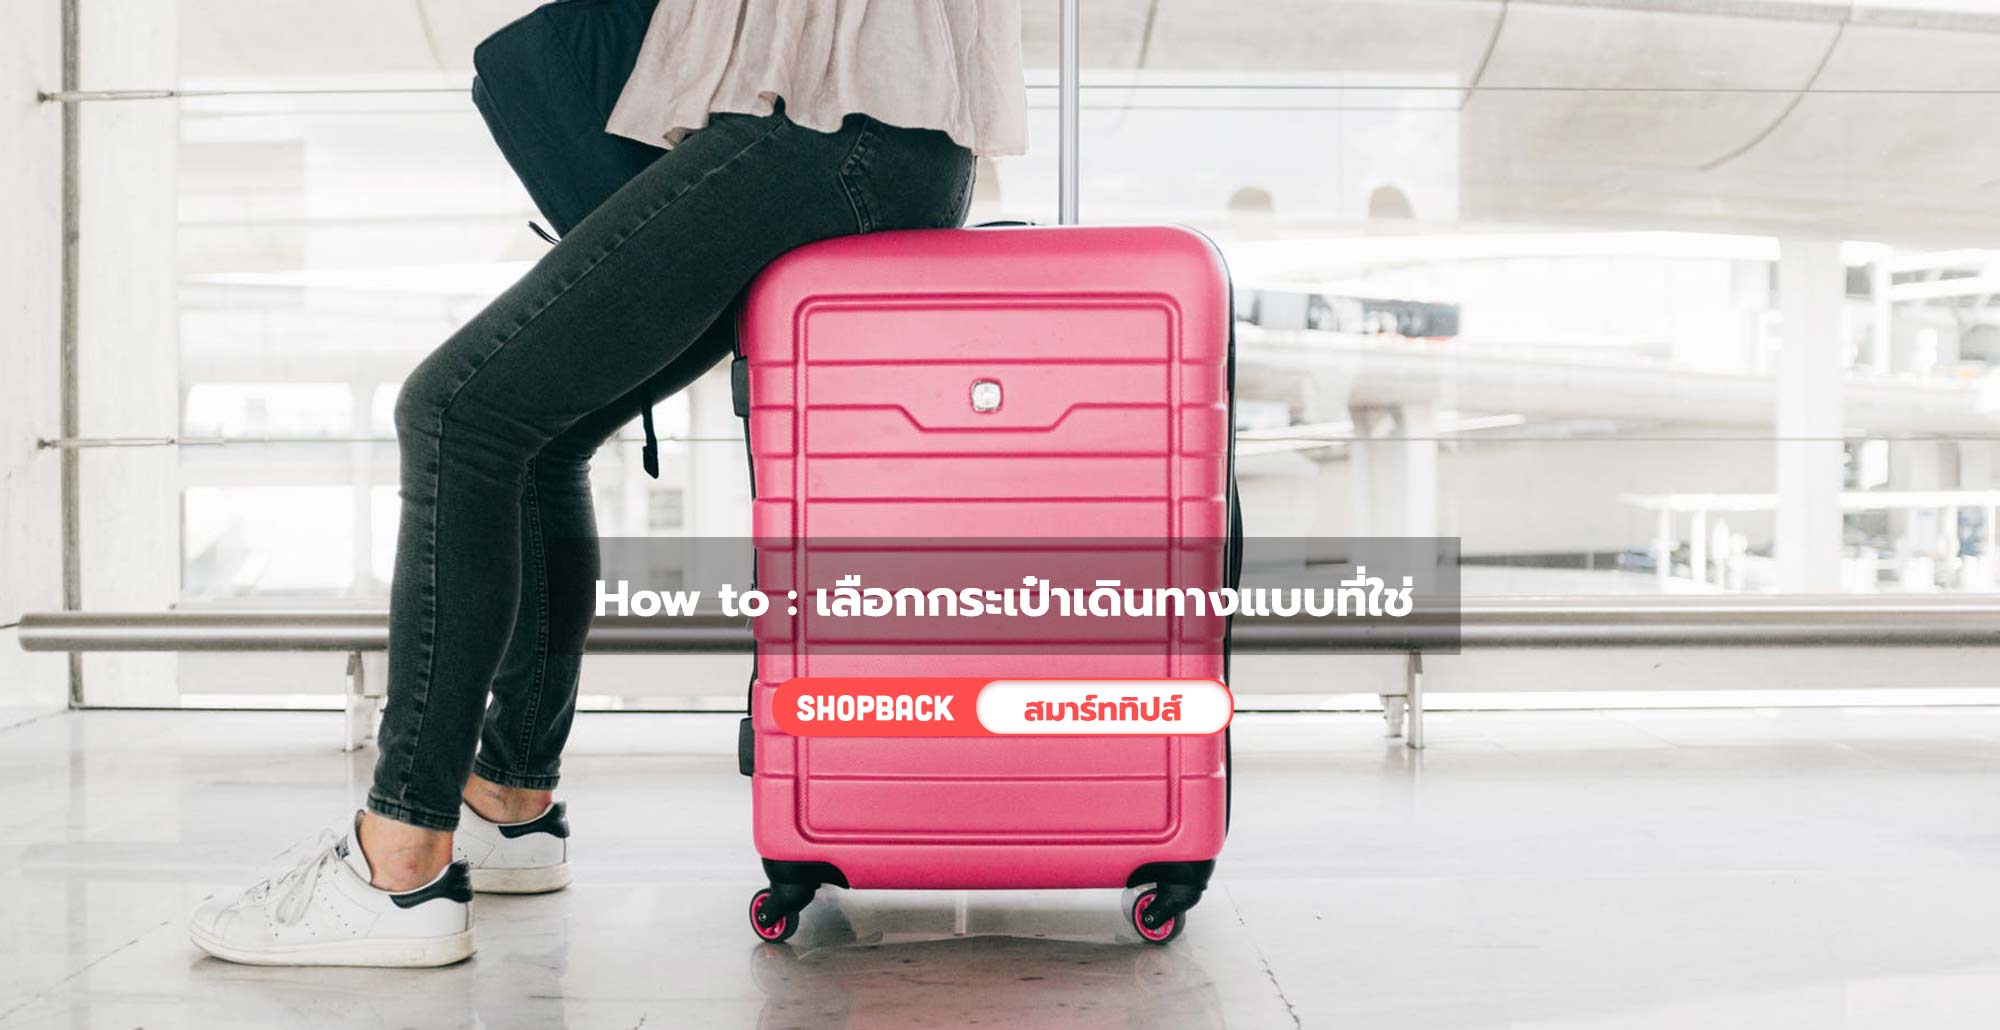 How To : เลือกกระเป๋าเดินทางแบบที่ใช่ กระเป๋าเดินทาง น้ำหนักเบาถึงจะดีจริงไหม?